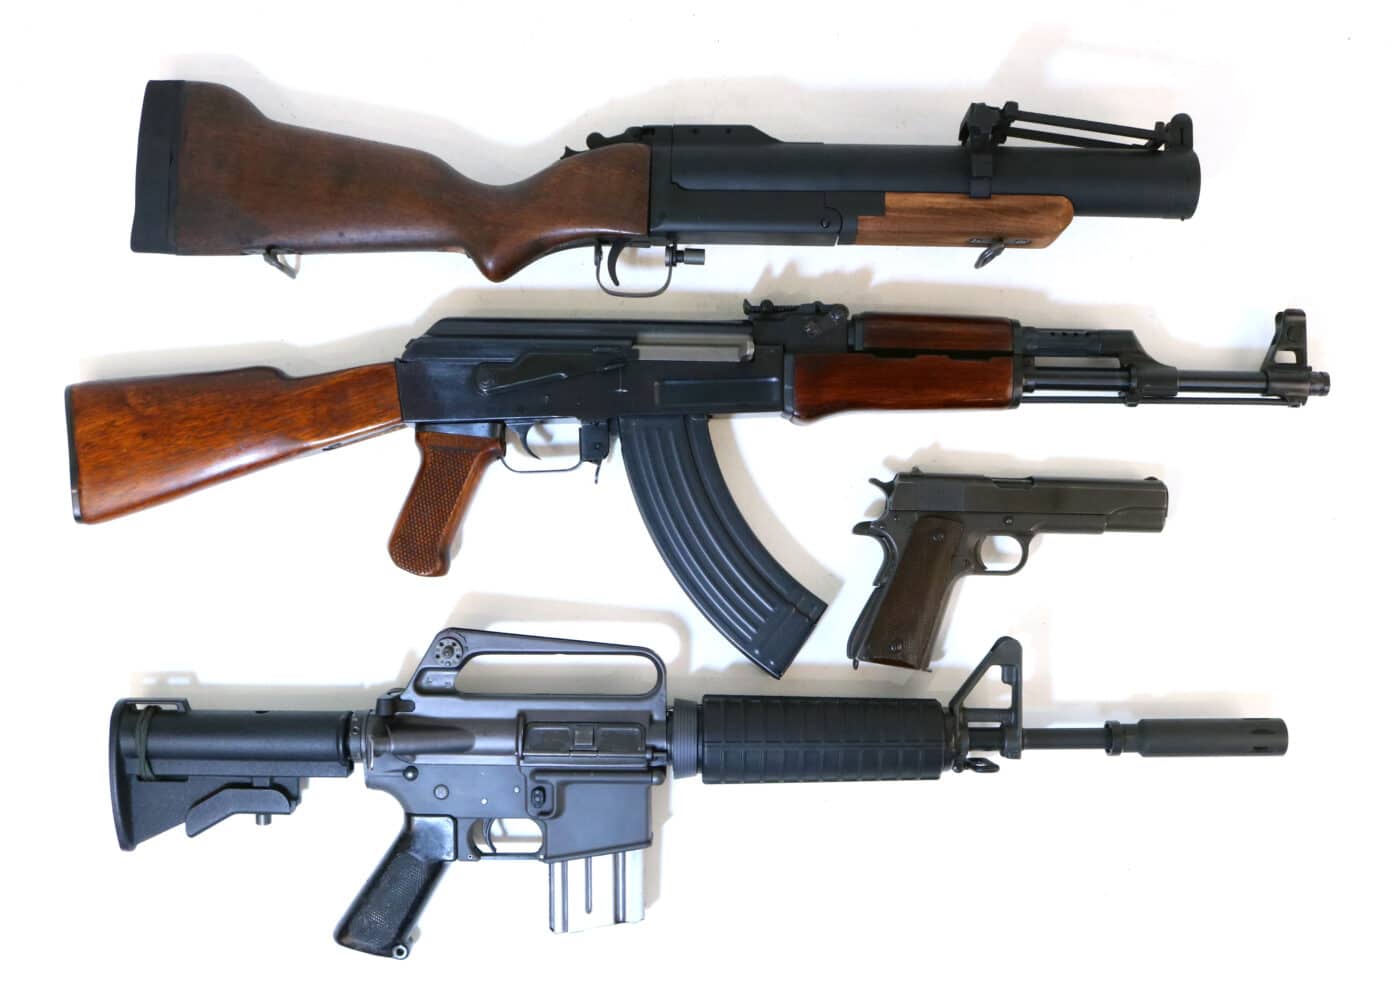 M-79 and guns from Vietnam War